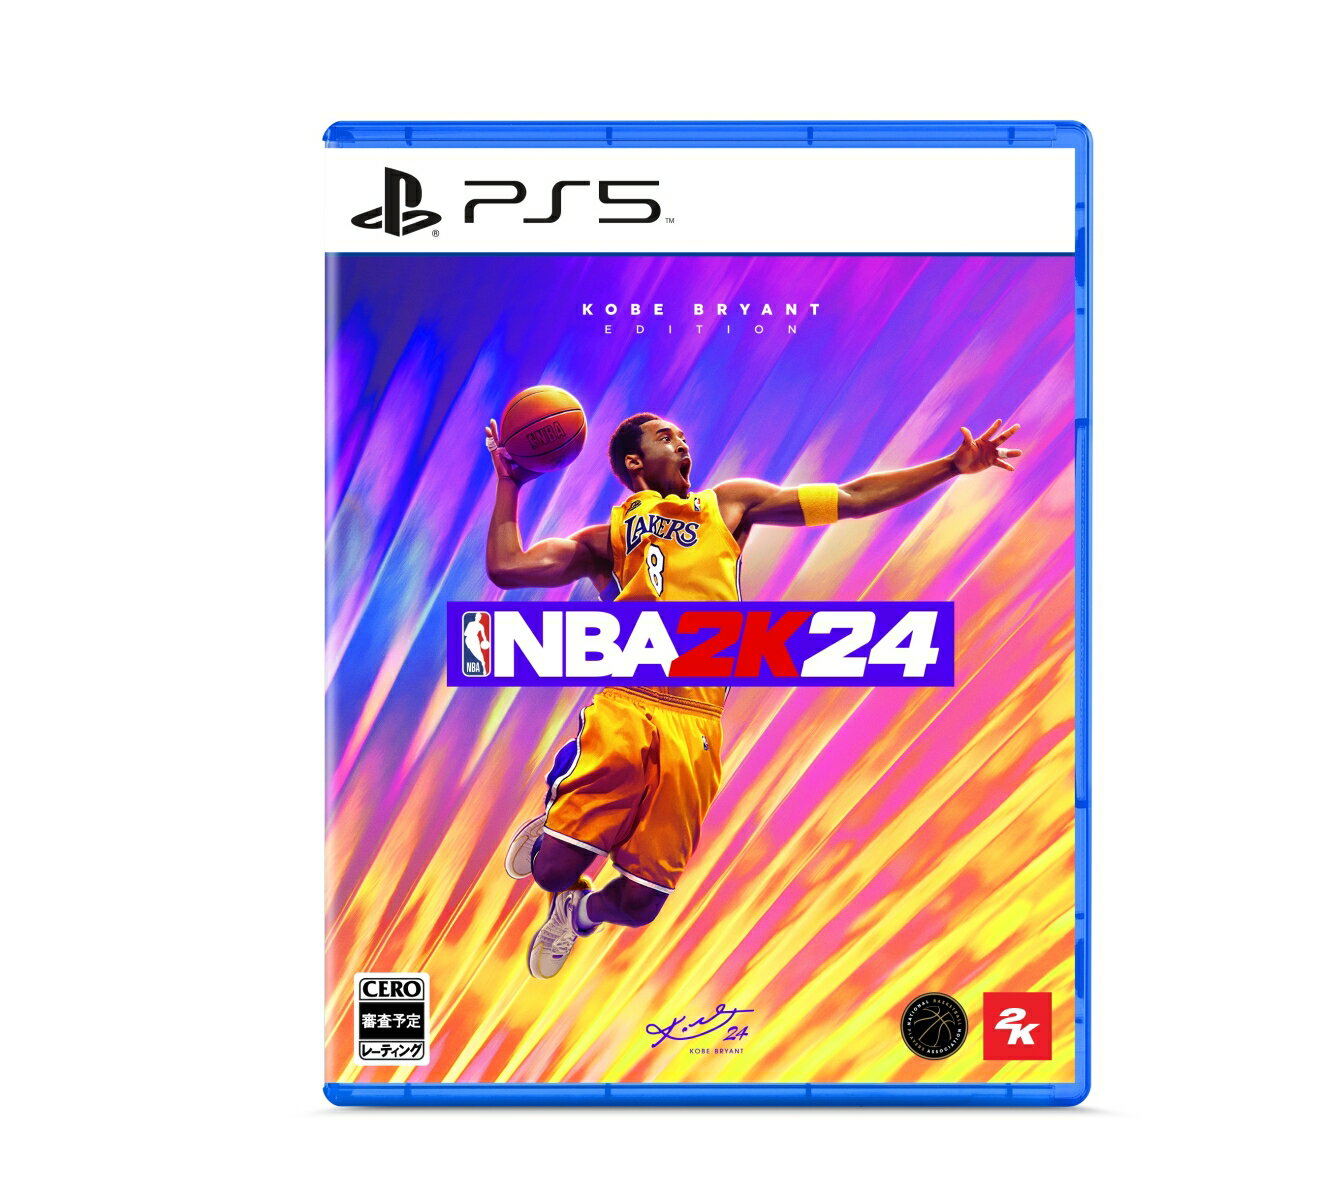 【特典】『NBA 2K24』コービー・ブライアント エディション (通常版) PS5版(【早期購入封入特典】ゲーム内通貨5,000 VC+【早期購入封入特典】ゲーム内マイチームモード用通貨ポイント)